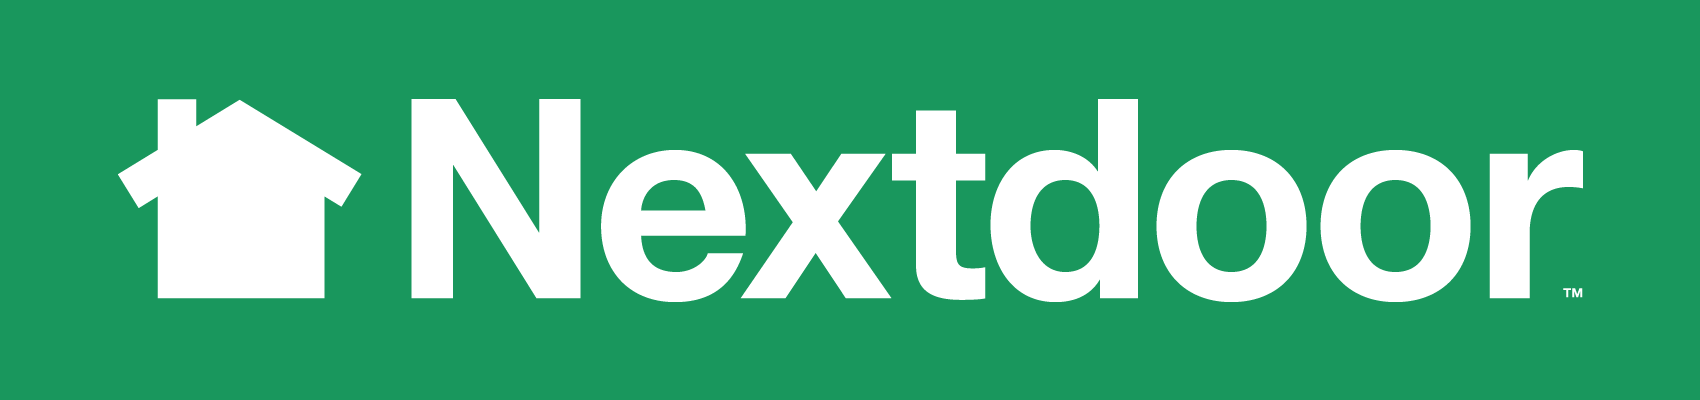 NextDoor_logo-white-large